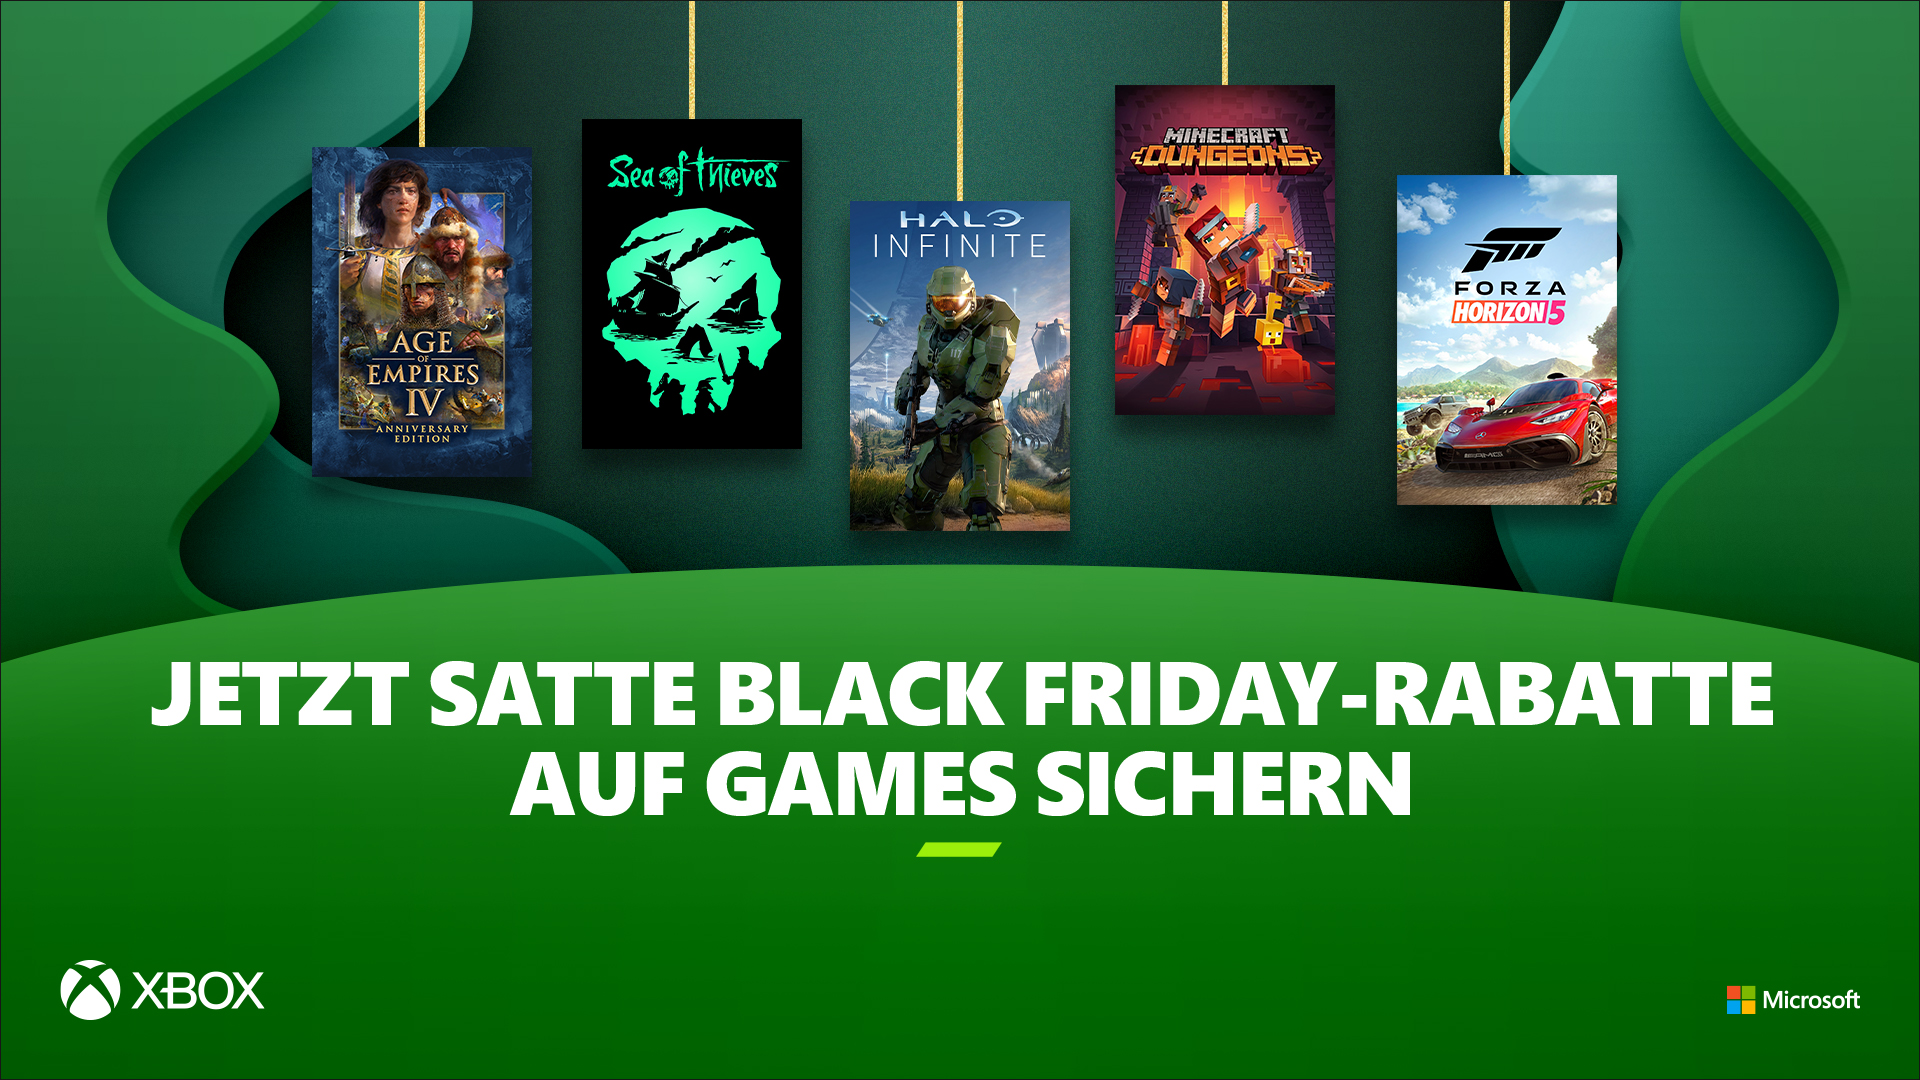 Black Friday und Cyber Monday Angebote: Rabatte auf Xbox Series S, Controller und über 900 Spiele